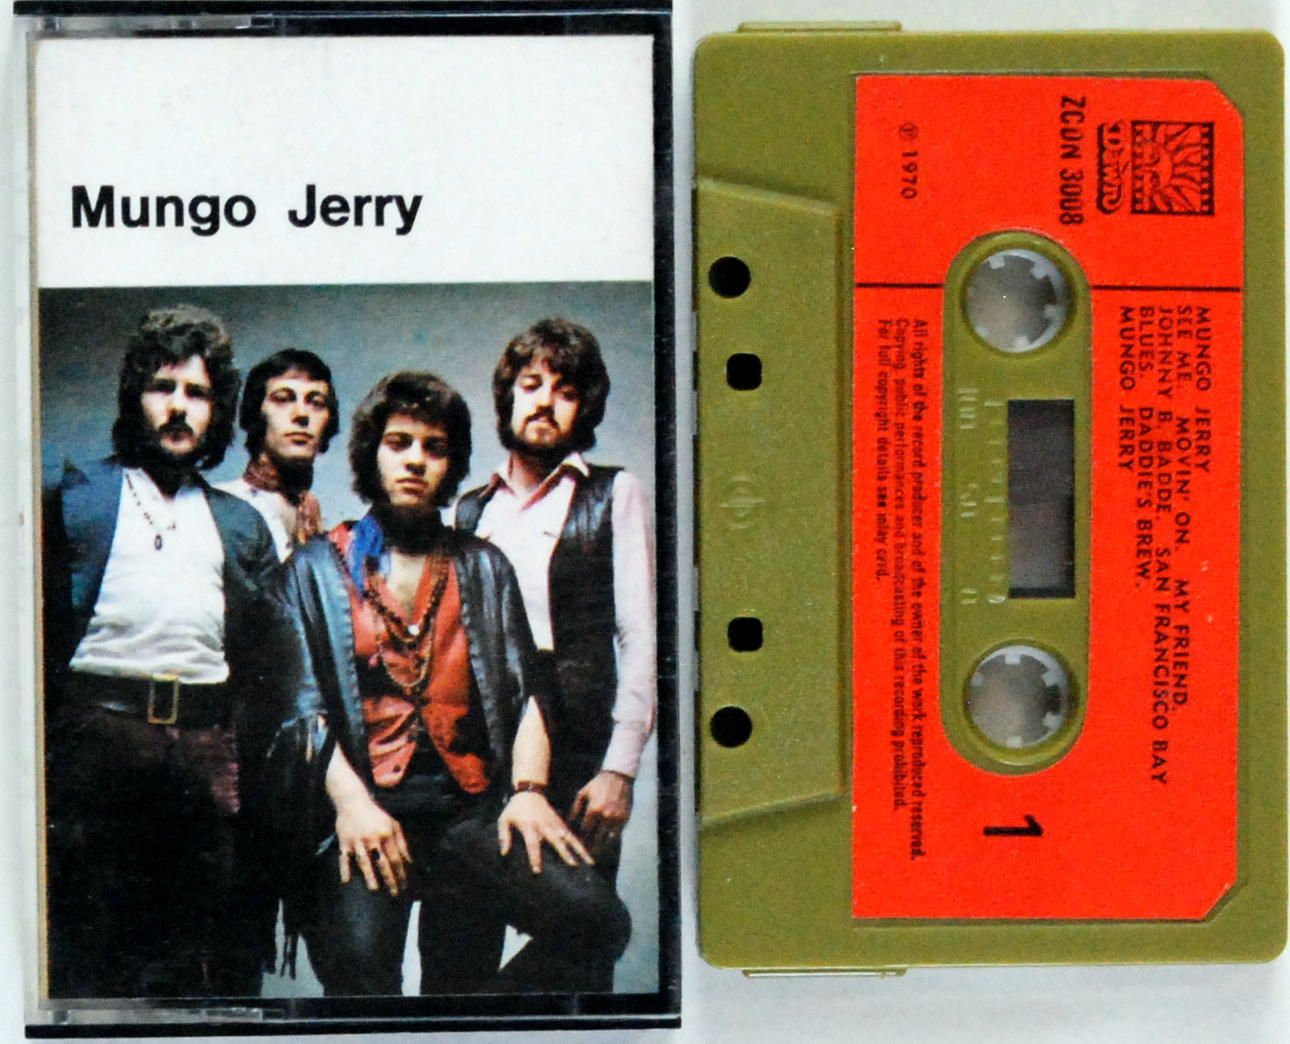 Mungo Jerry - Mungo Jerry (UK) MC I Wydanie 1970r. BDB